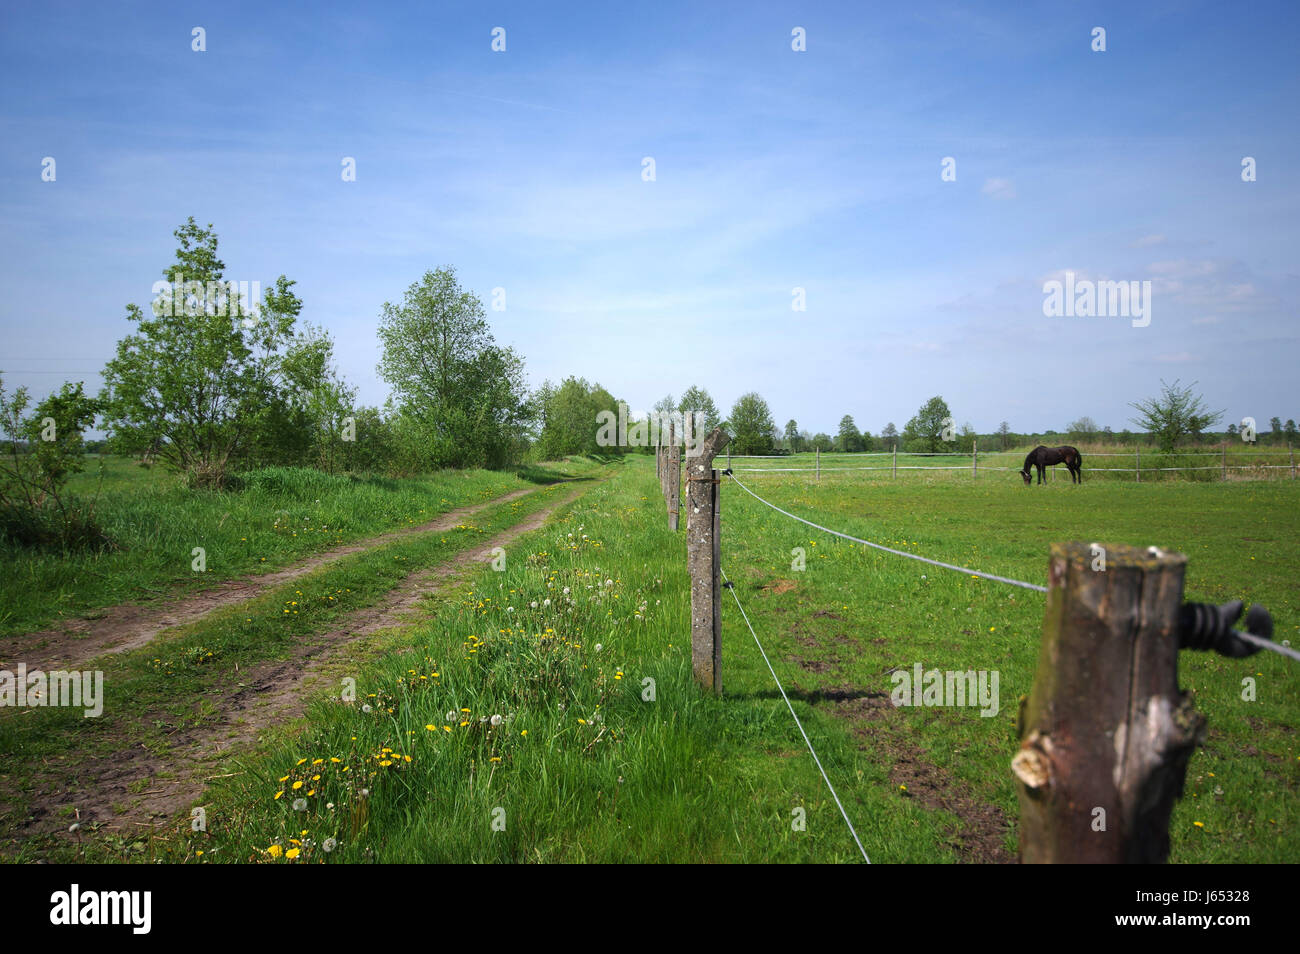 Eingezäunten grüne Pastiche mit einem Pferd Essen Rasen. Blauen Himmel im Hintergrund. Stockfoto